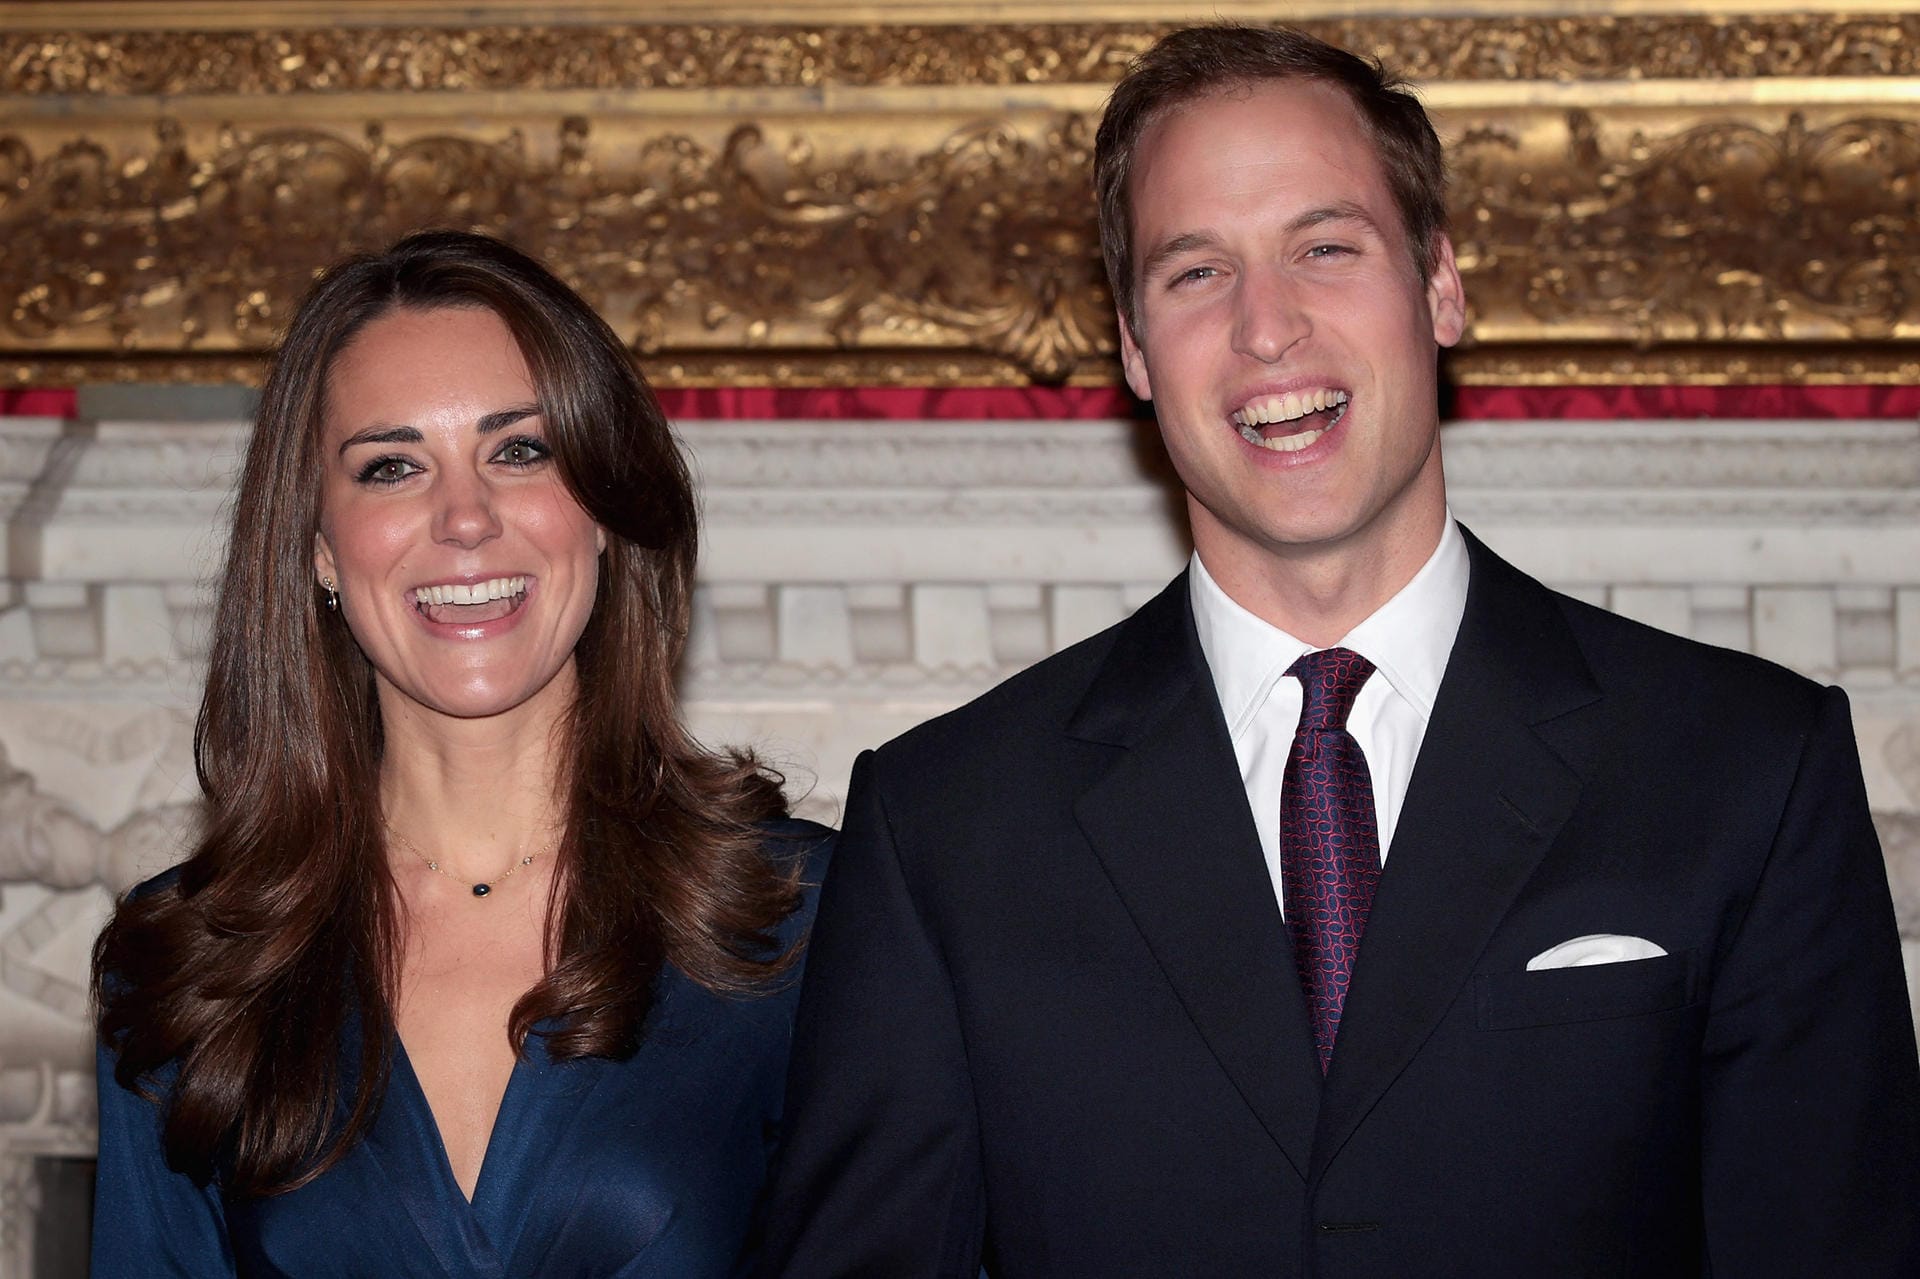 16. November 2010: Der Kensington-Palast verkündet die Verlobung von Prinz William mit Kate Middleton.